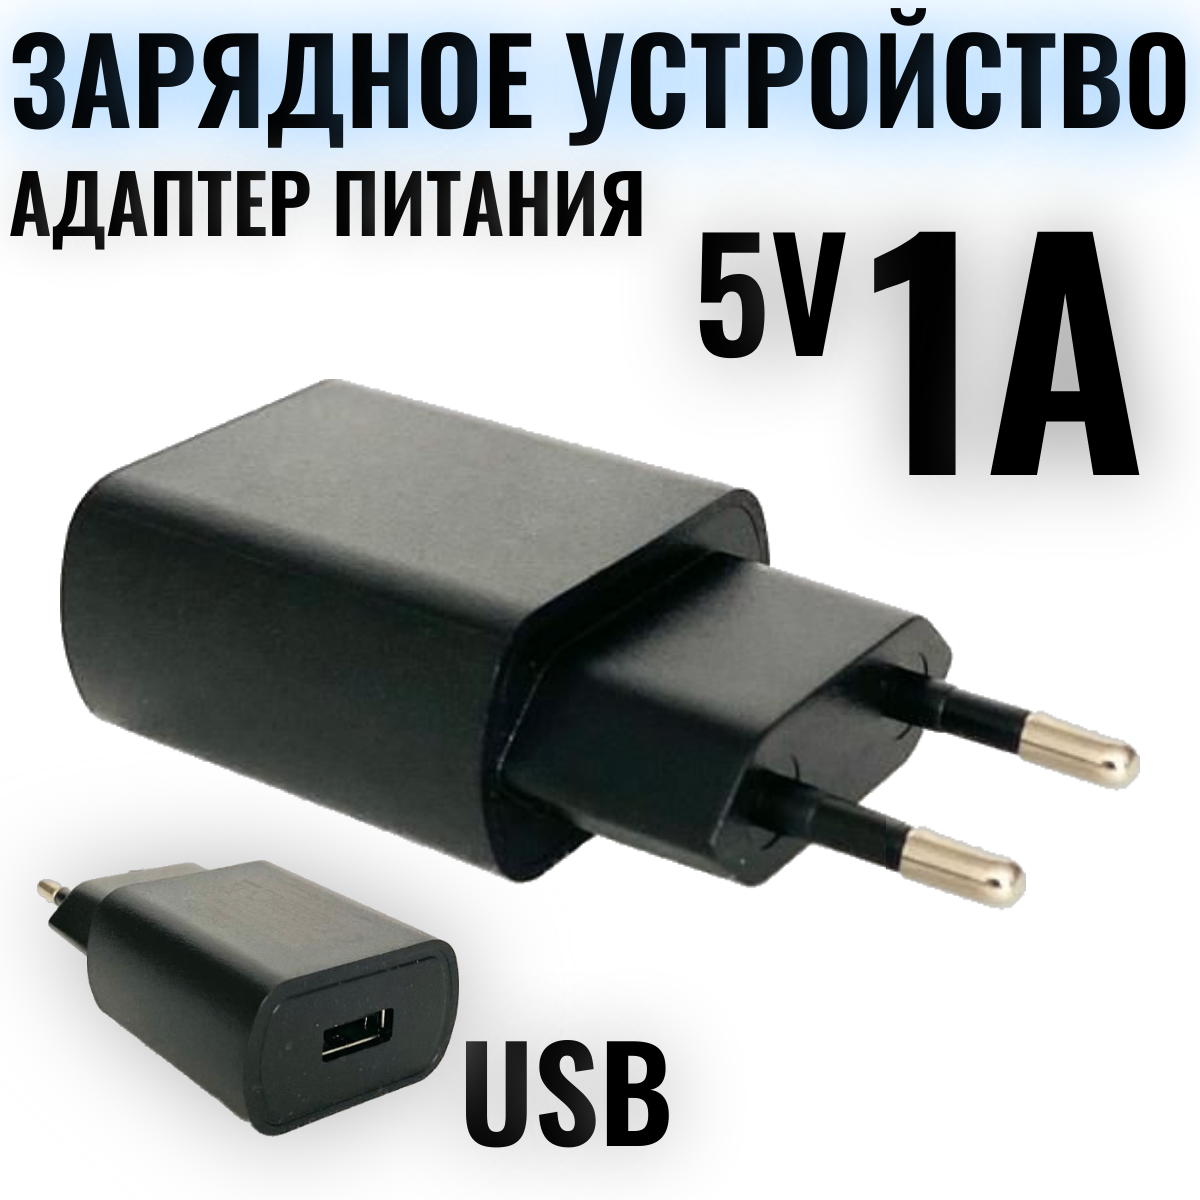 Сетевое зарядное устройство 5V / 1А / СЗУ/ универсальный адаптер питания для телефона/ блок зарядки для смартфона, черный